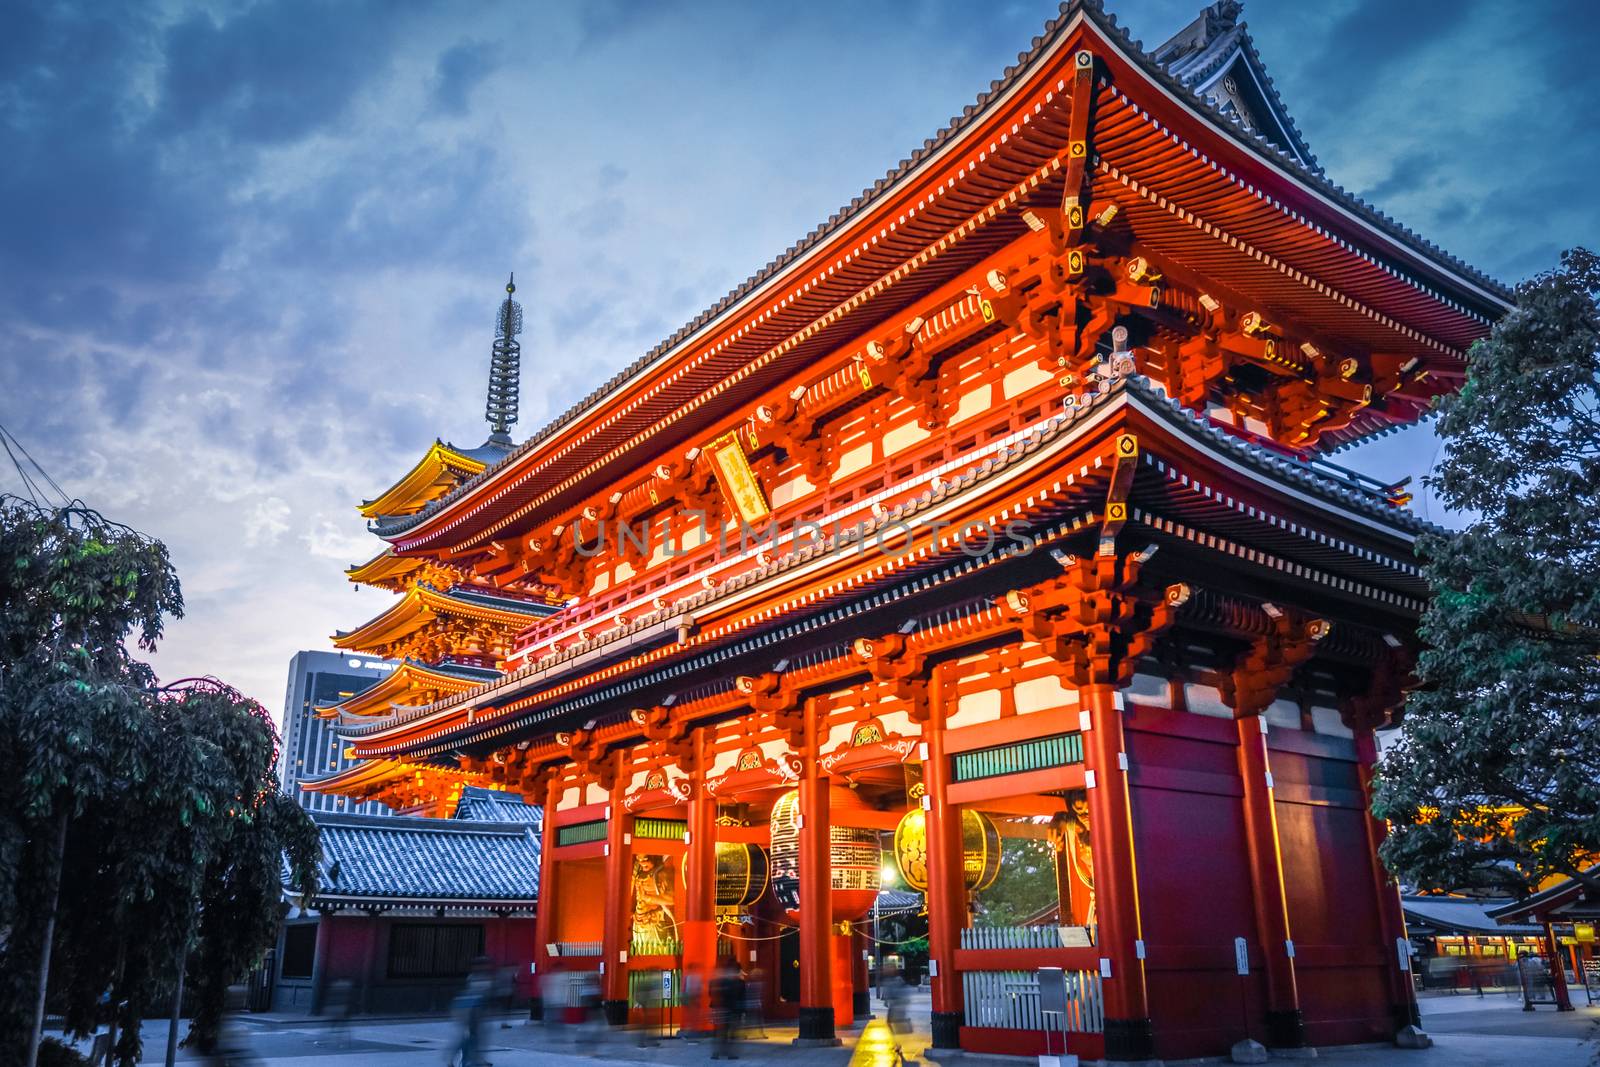 Kaminarimon gate and Pagoda at night, Senso-ji temple, Tokyo, Japan